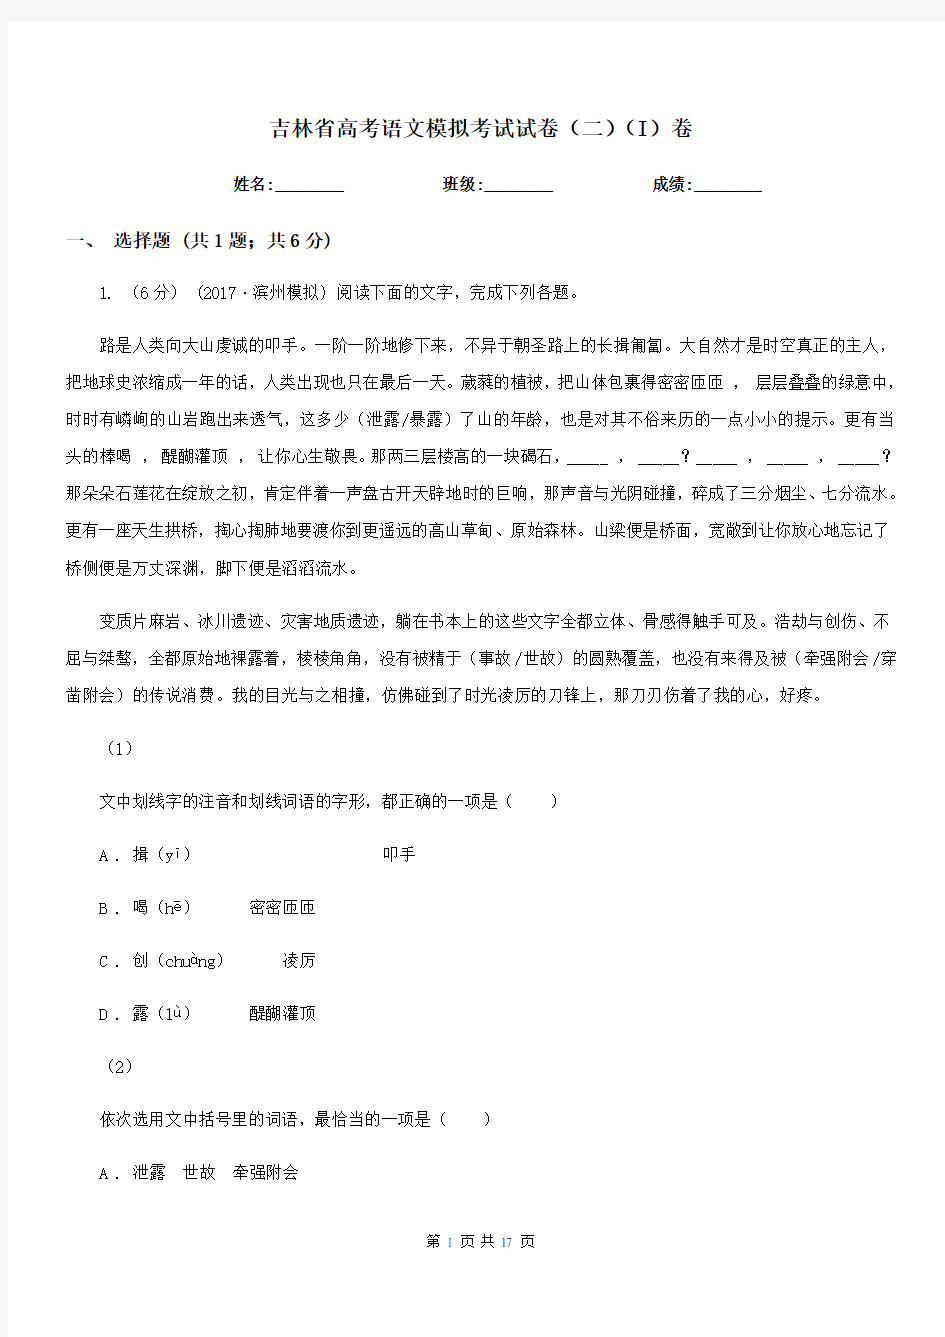 吉林省高考语文模拟考试试卷(二)(I)卷